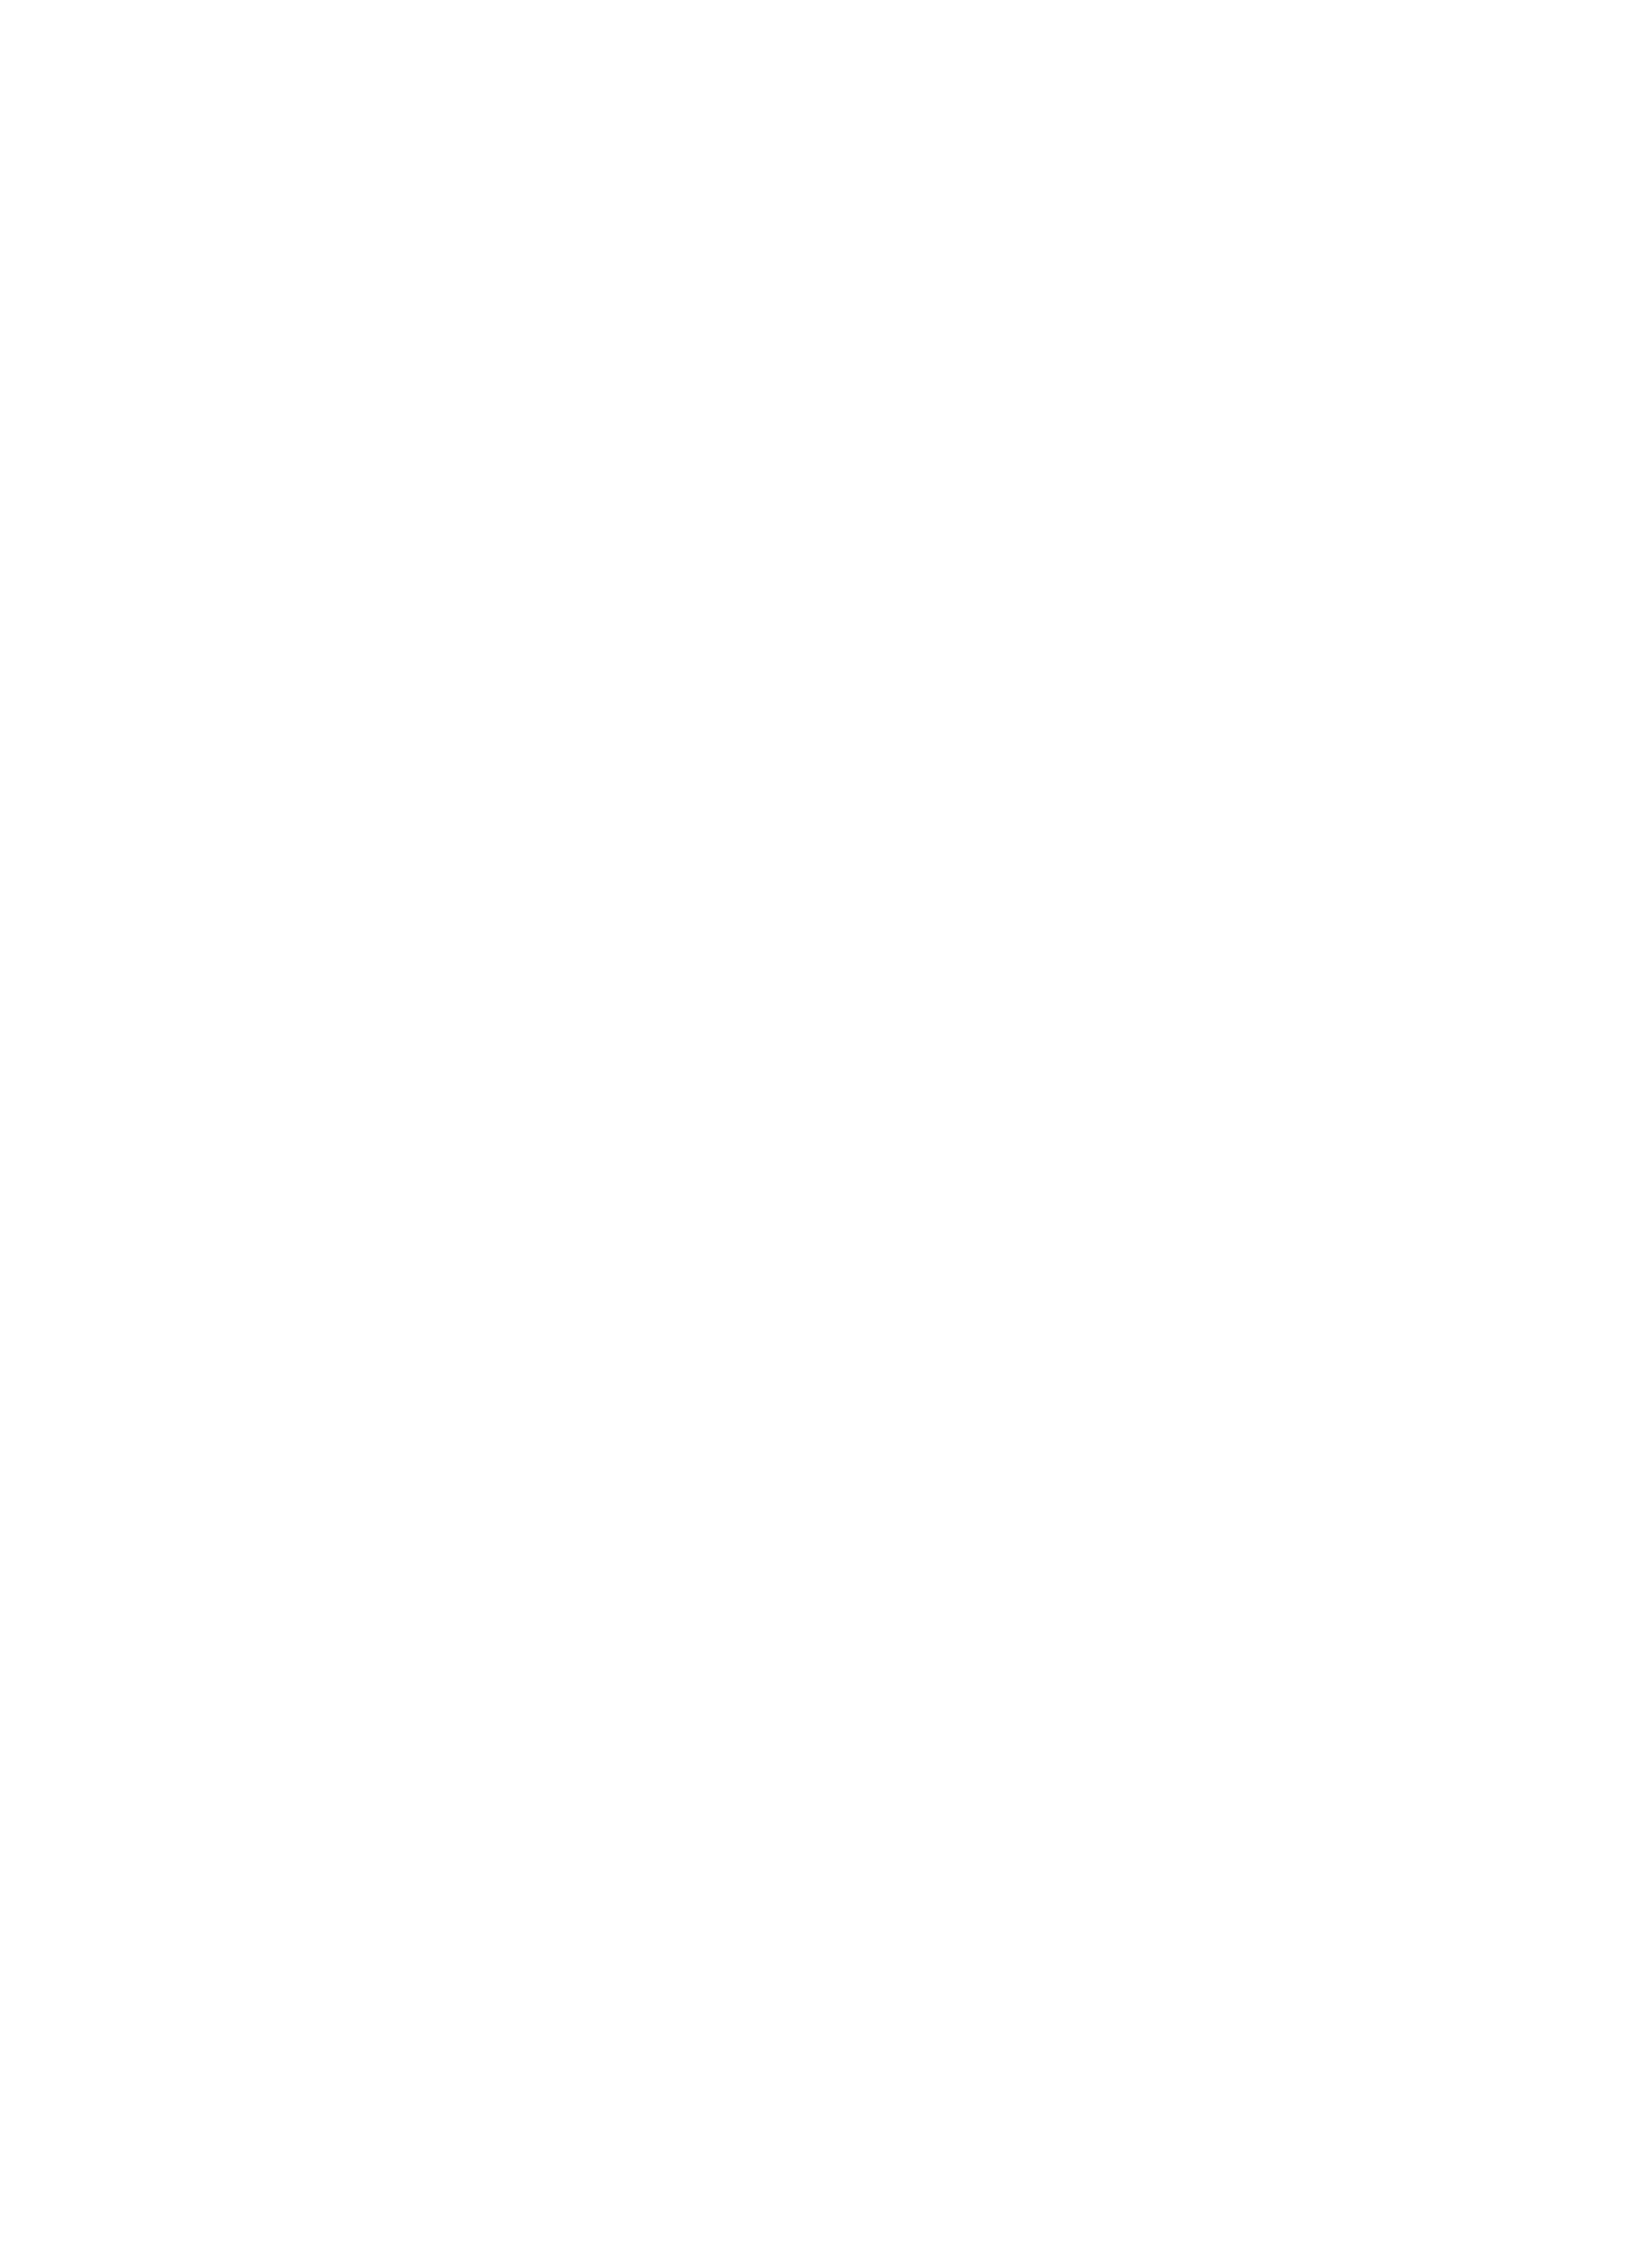 Logo du partenaire CDIVN création